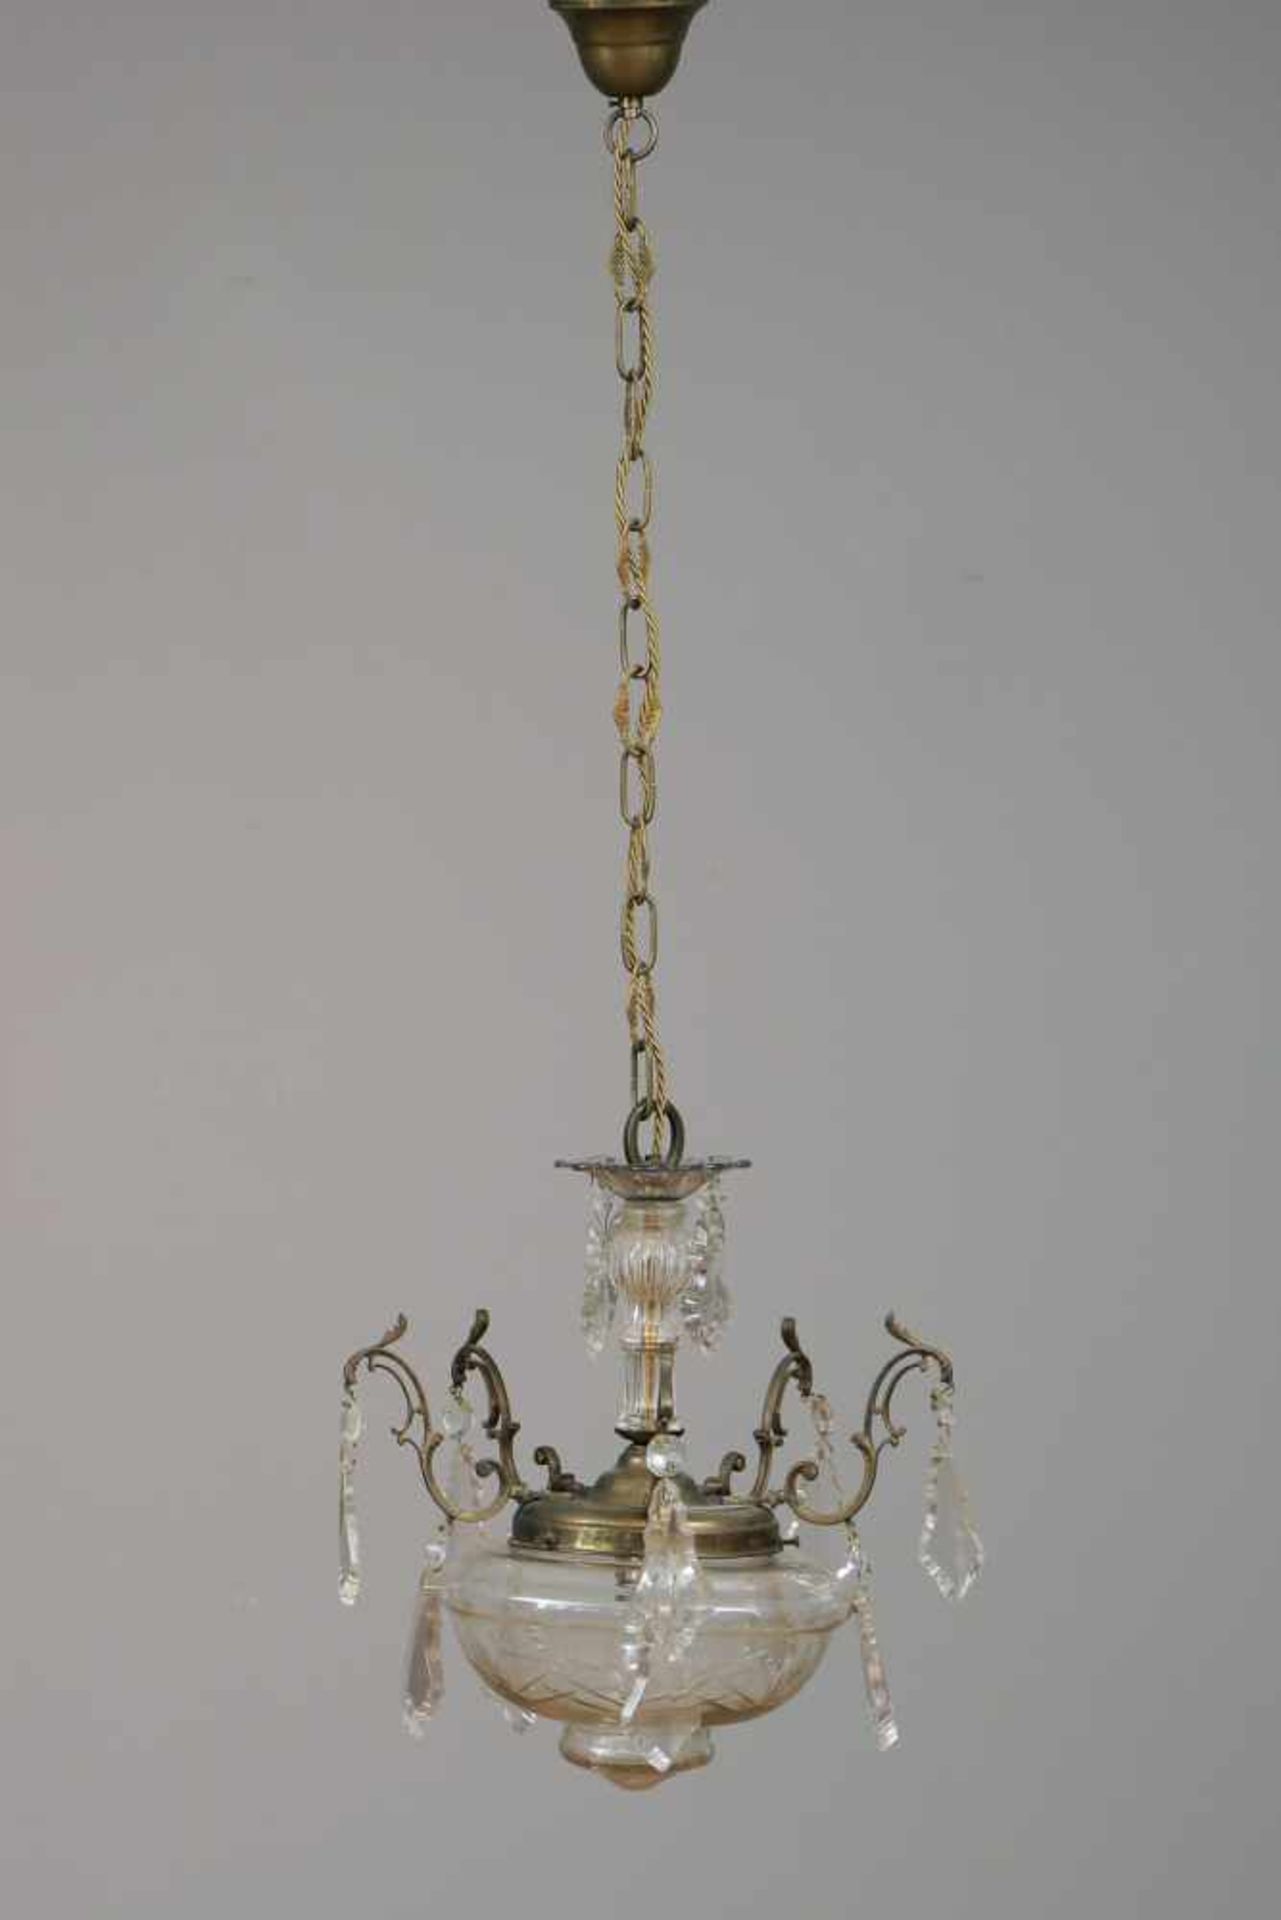 Deckenlampefarbloses Kristall und Messing, um 1920, runder, geschliffener Kuppelschirm, 5 Rankenarme